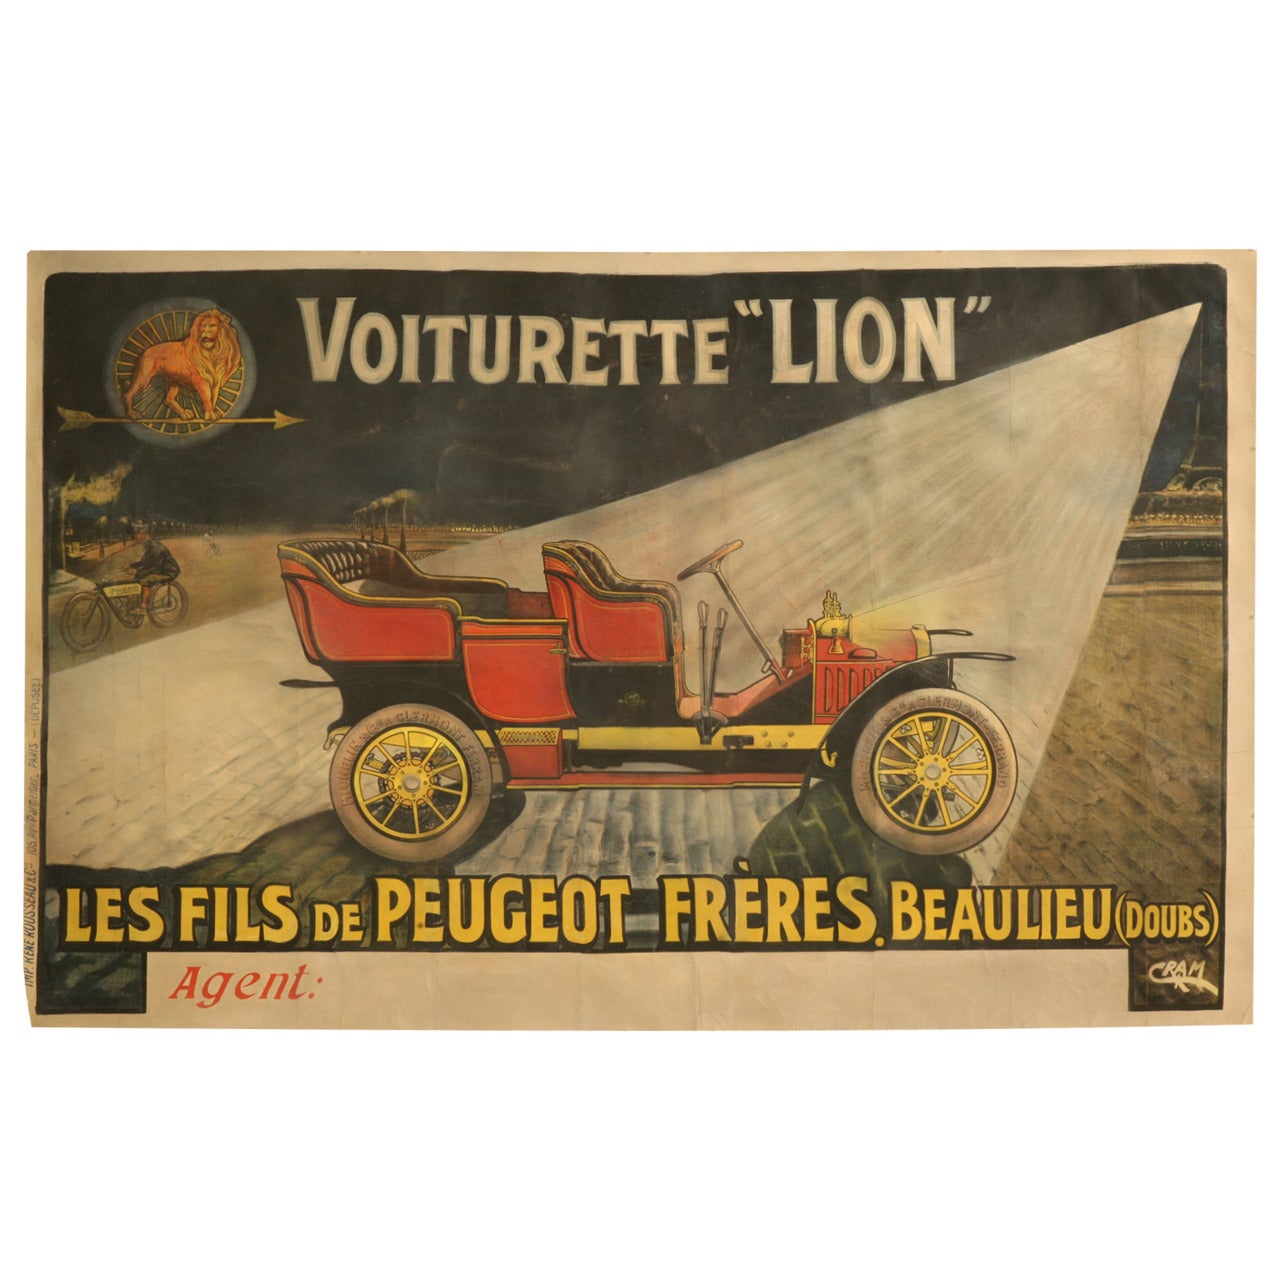 Automobile Poster for Voiturette "Lion" Peugeot by Cram, circa 1905-1909